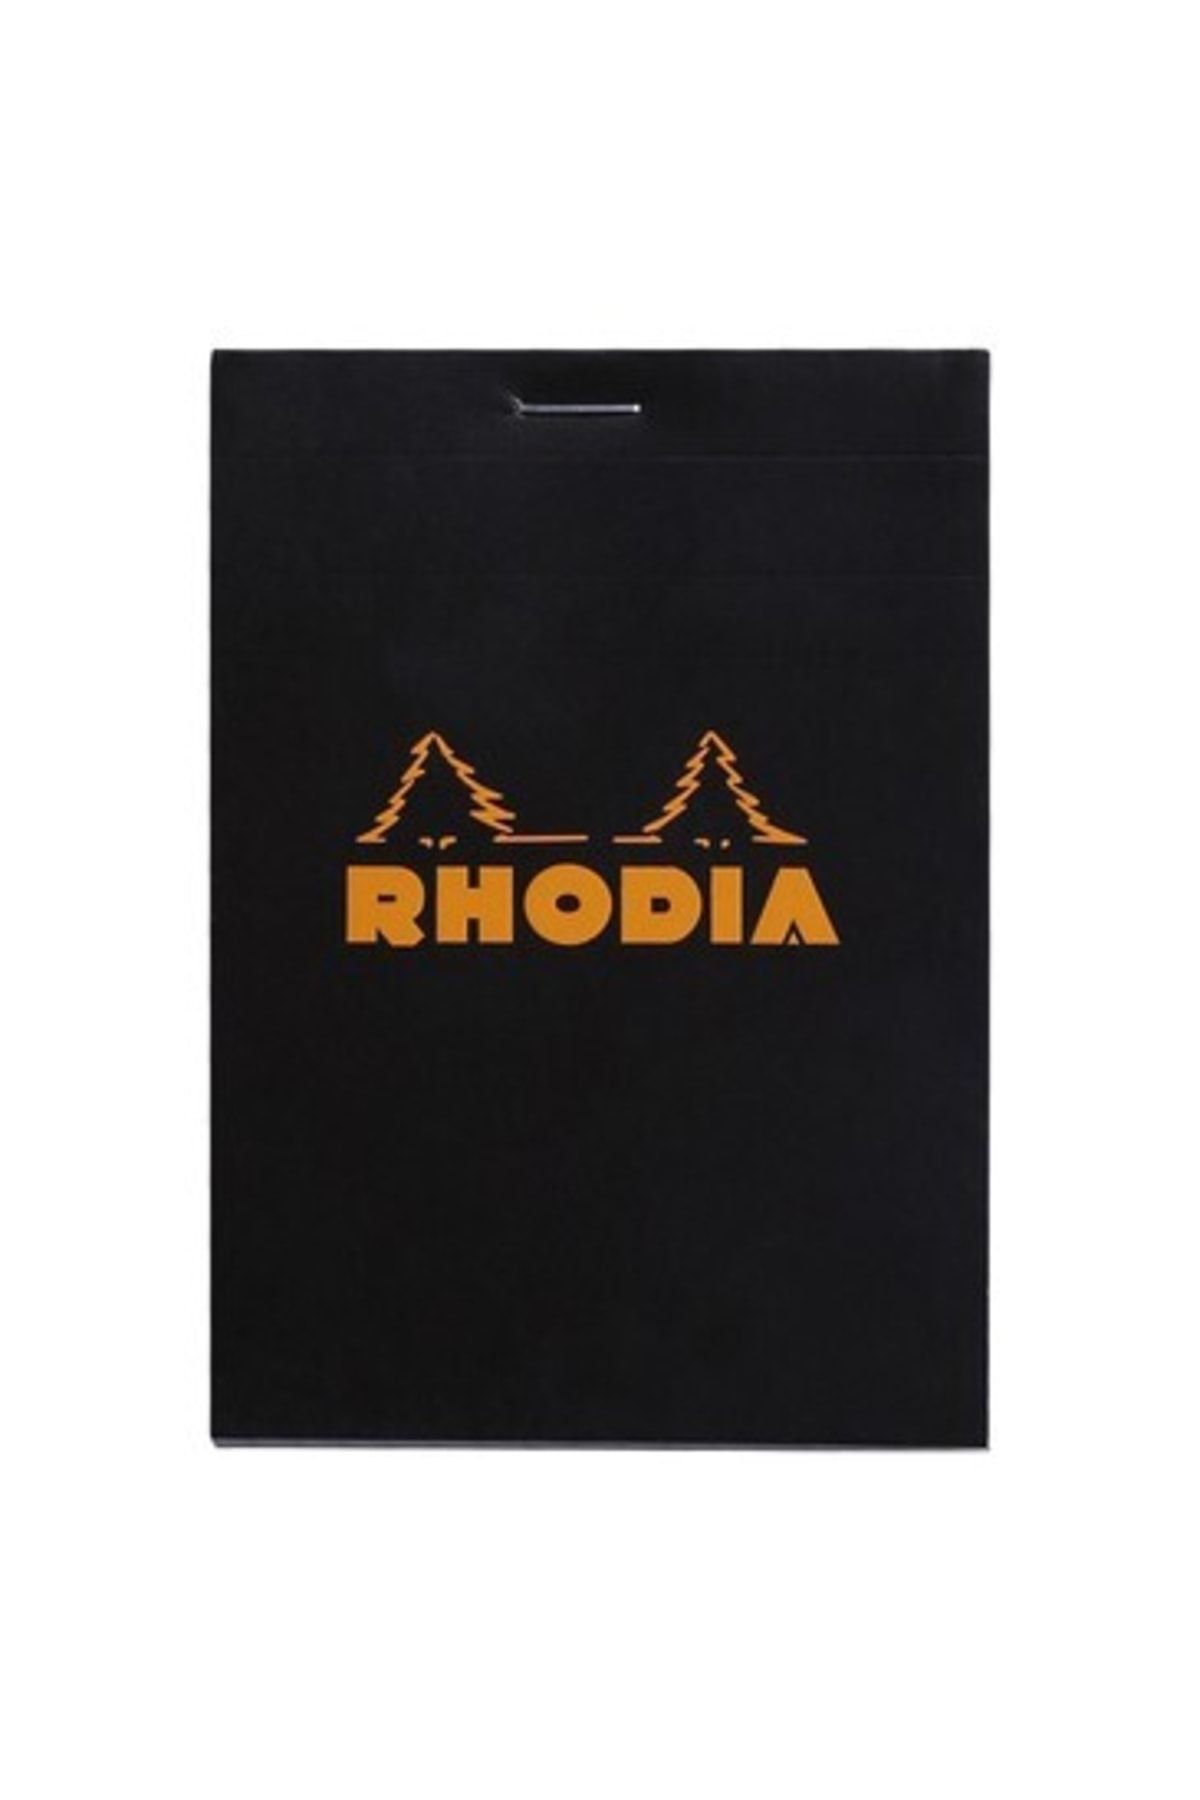 Rhodia Bloknot Kareli Siyah 8.5 X 12 Cm.